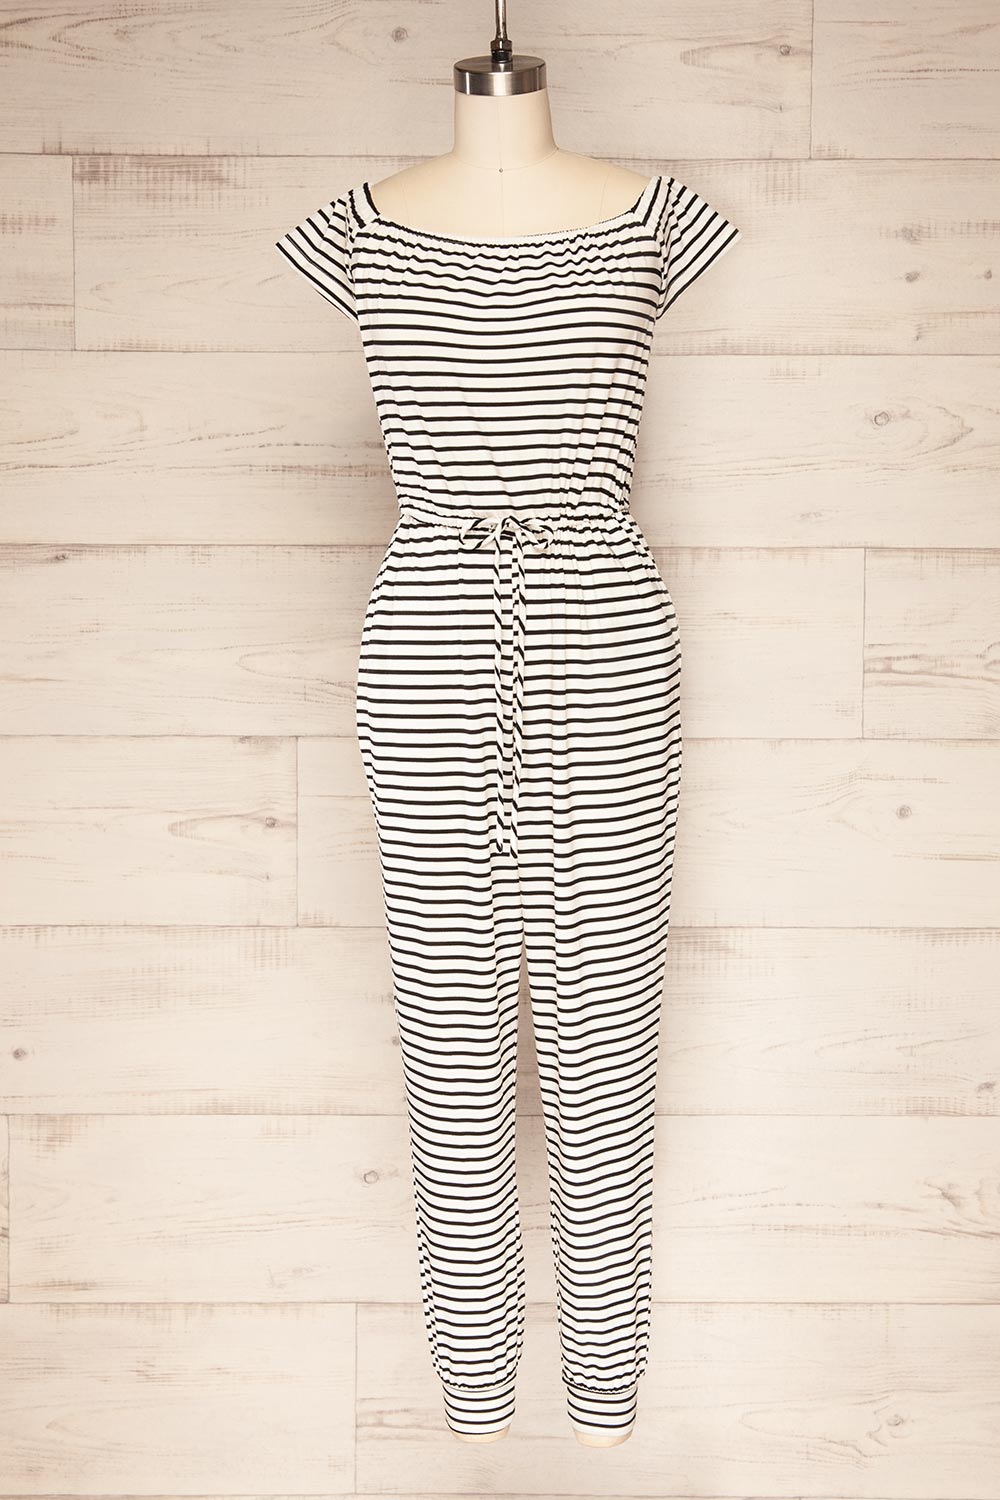 Khory White Striped Short Sleeve Jumpsuit | La petite garçonne front view